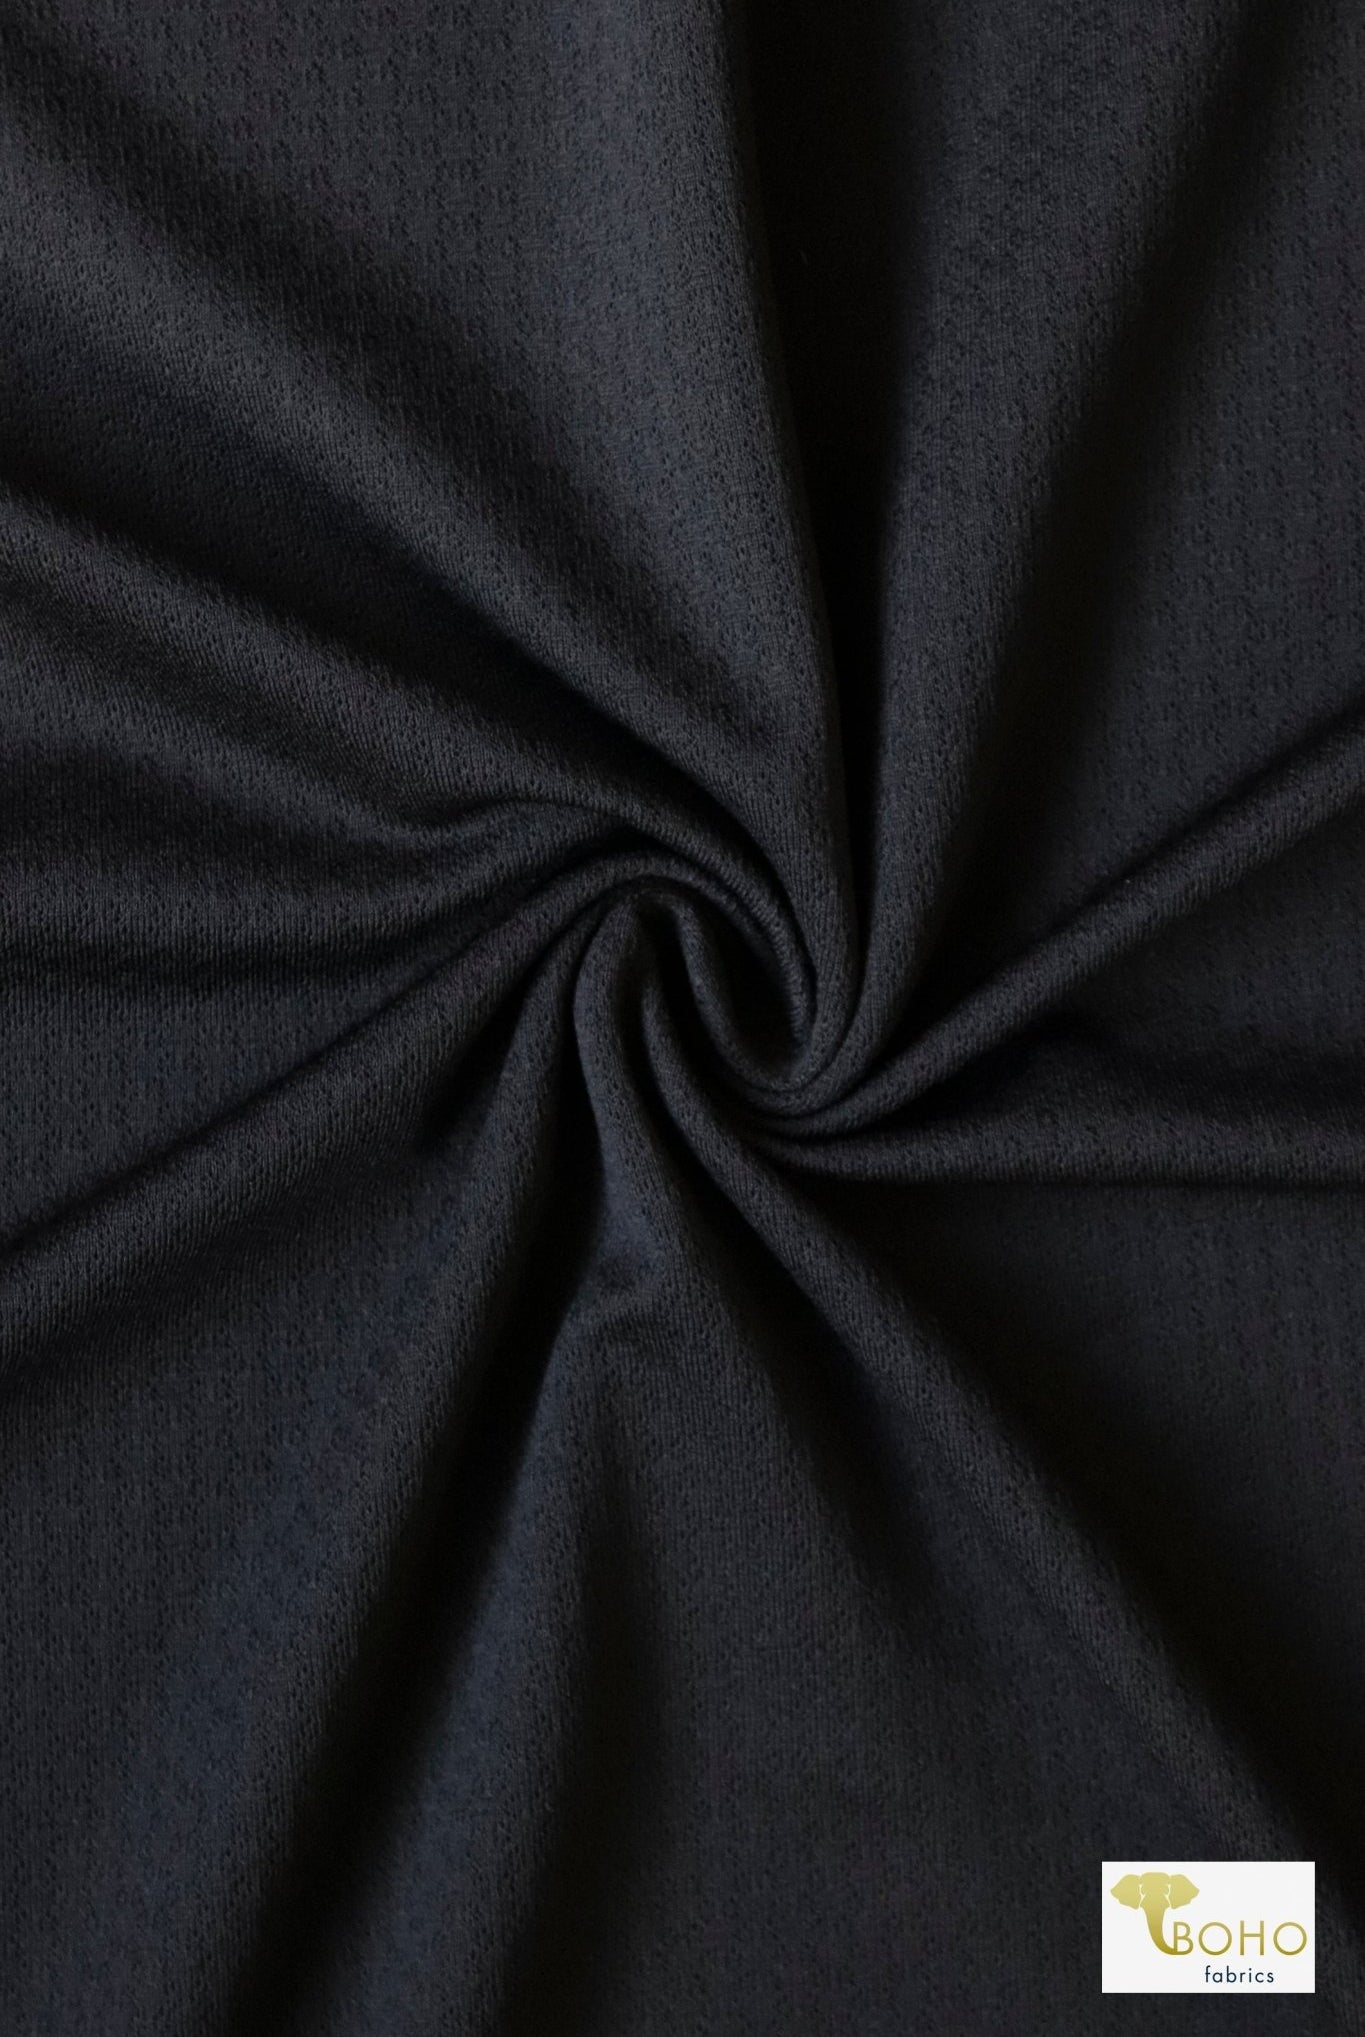 Black Honeycomb, Athletic Mesh Knit Fabric - Boho Fabrics